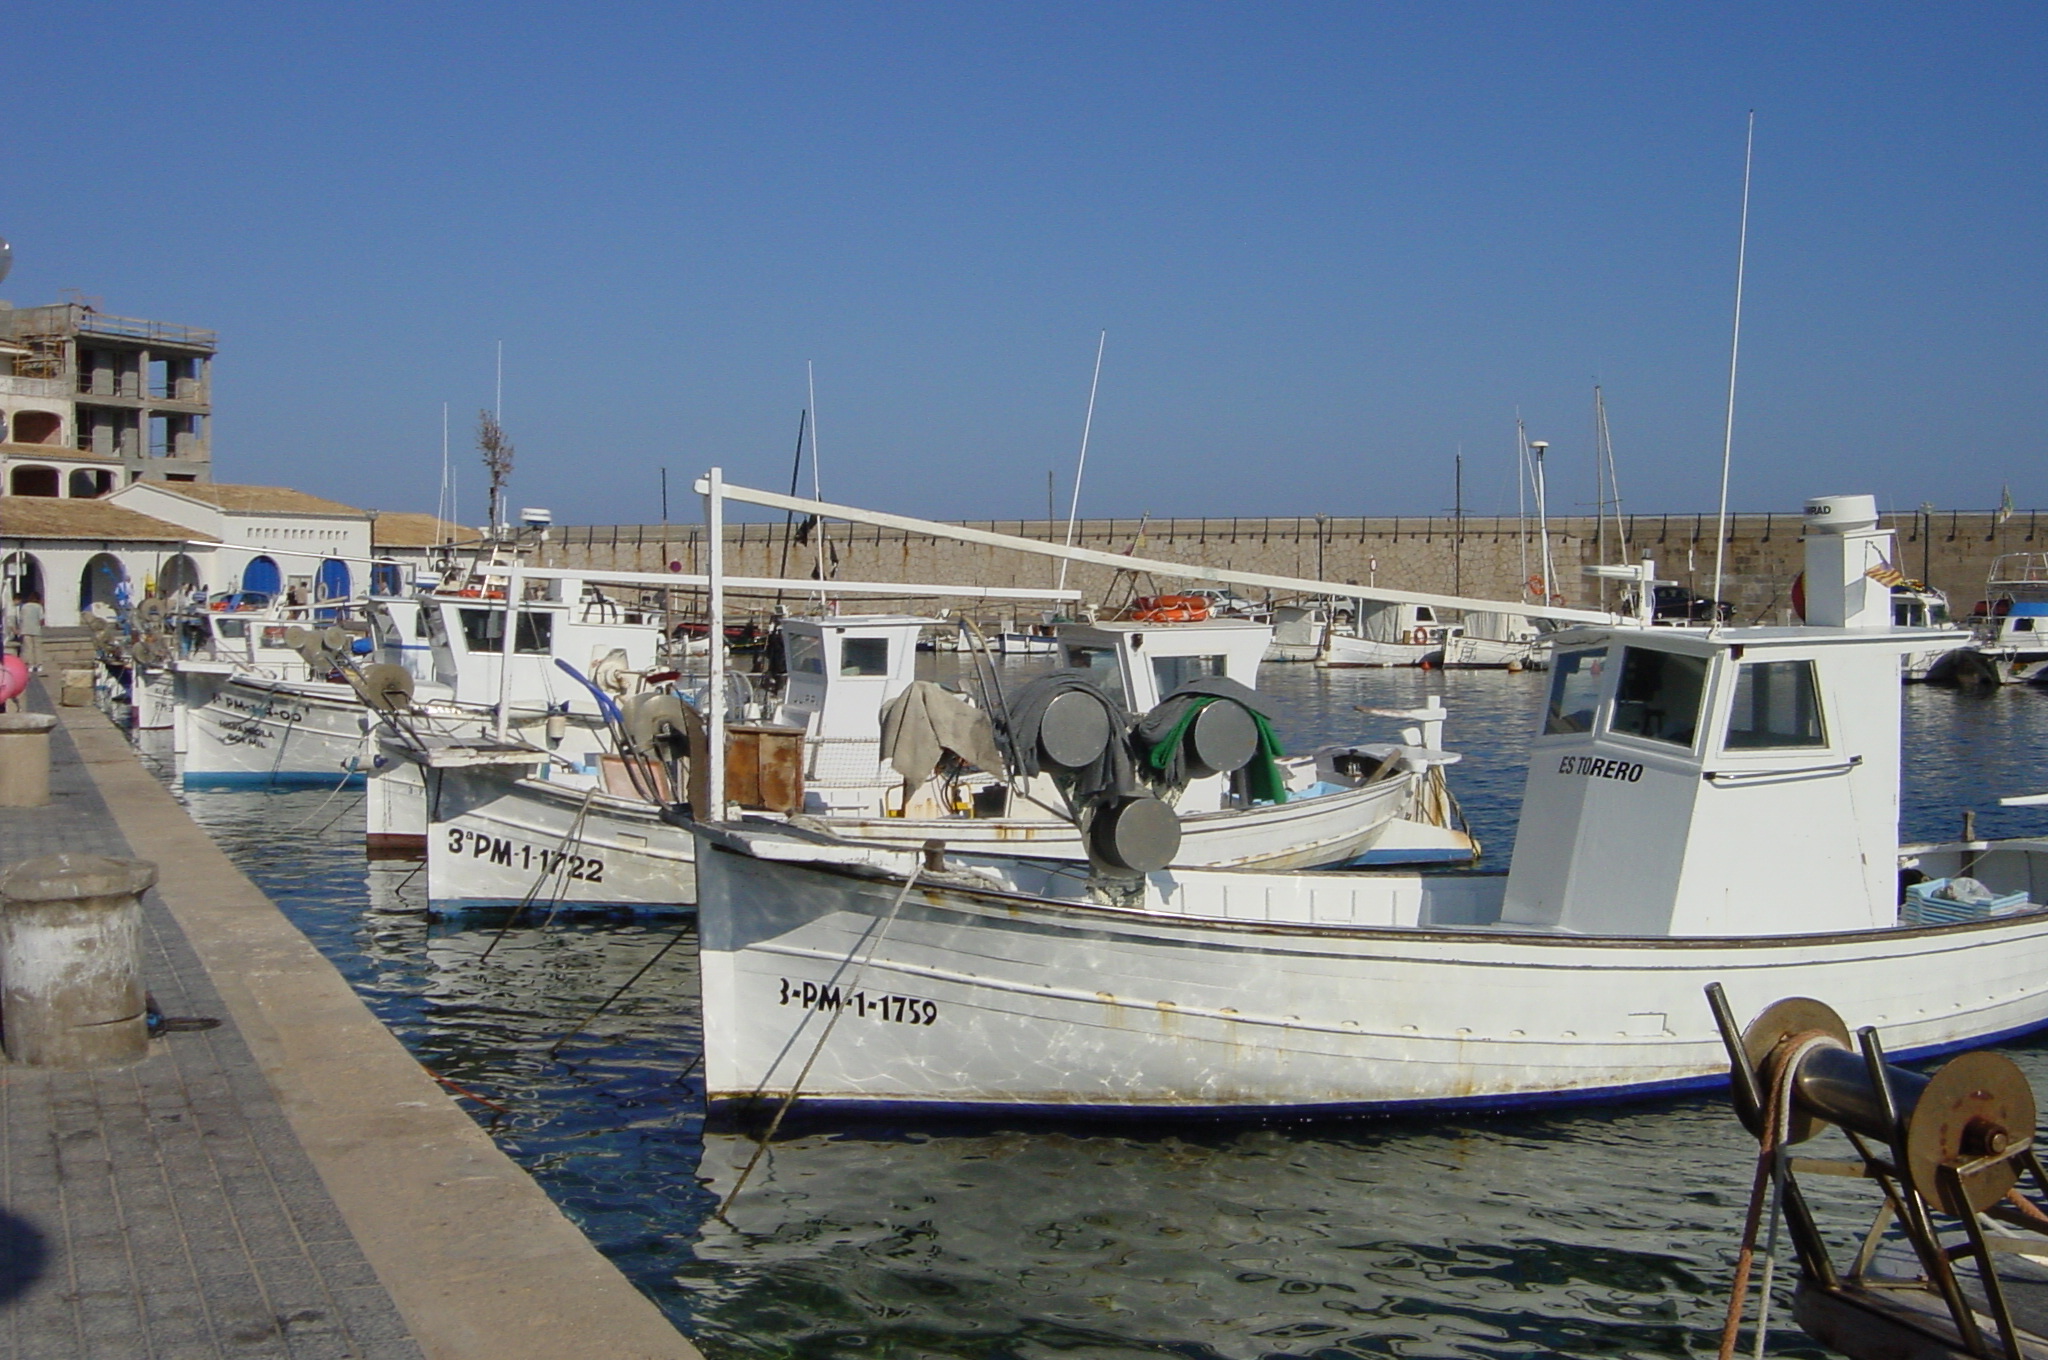 Barcas en el puerto de Cala Rajada (Mallorca, Illes Balears). © Sandra Mallol (COB - IEO, CSIC)